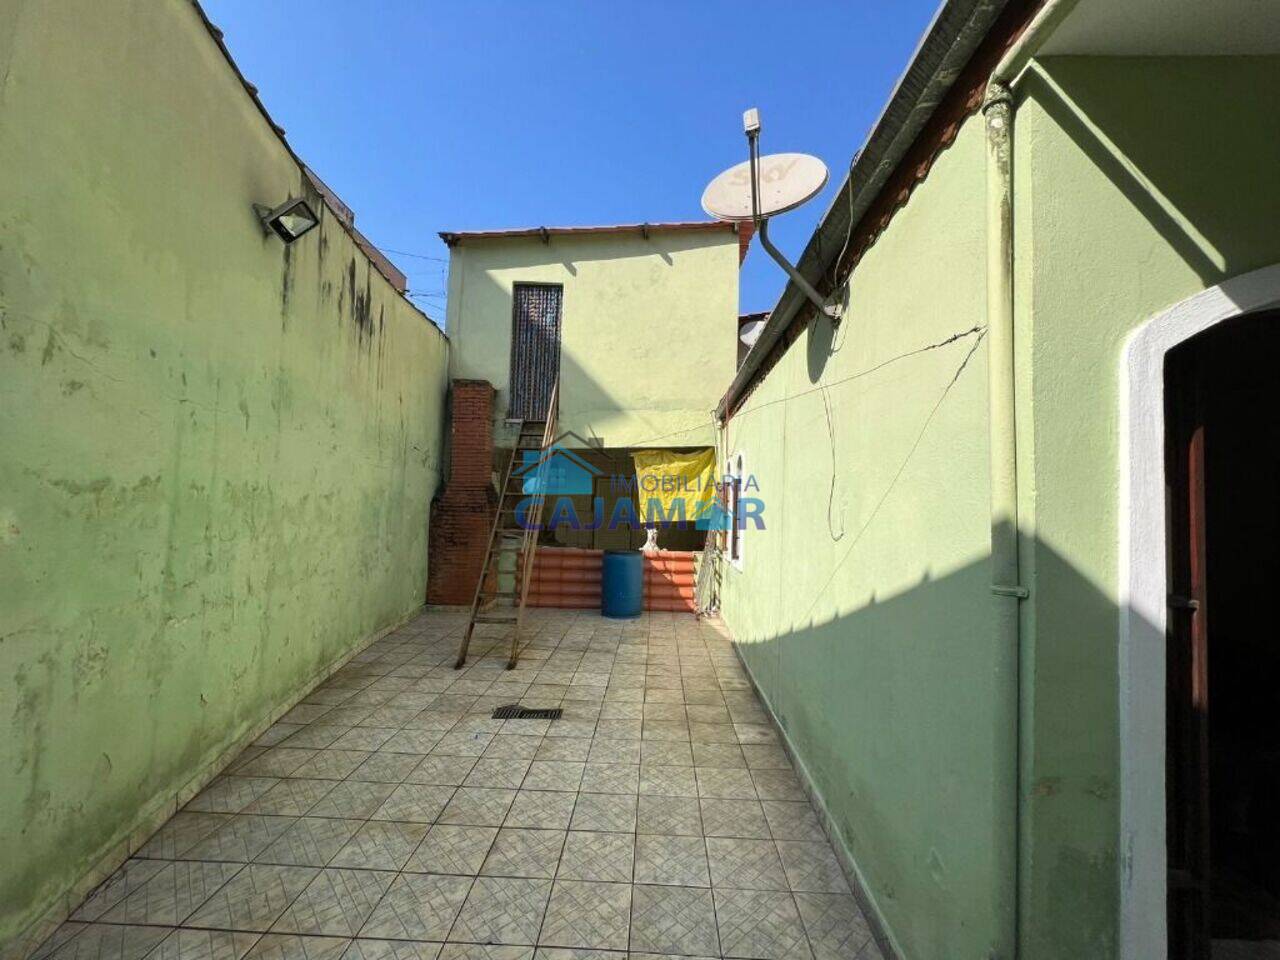 Casa Jordanésia, Cajamar - SP